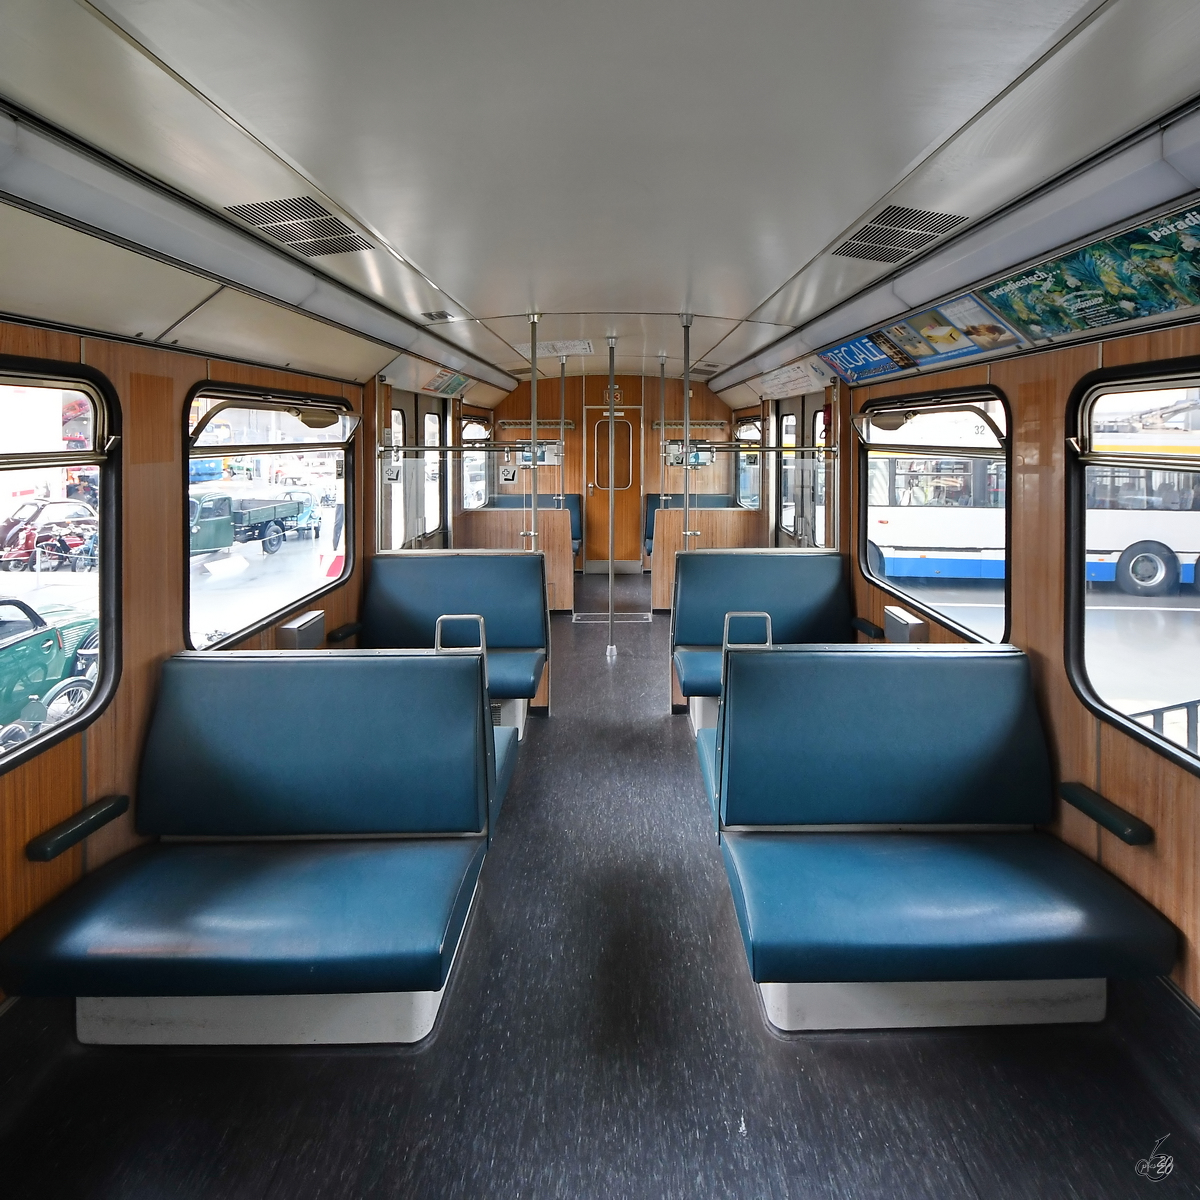 Fahrgastraum in einem der ersten Münchener U-Bahnwagen aus dem Jahr 1967. (Verkehrszentrum des Deutsches Museums München, August 2020) [Genehmigung liegt vor]